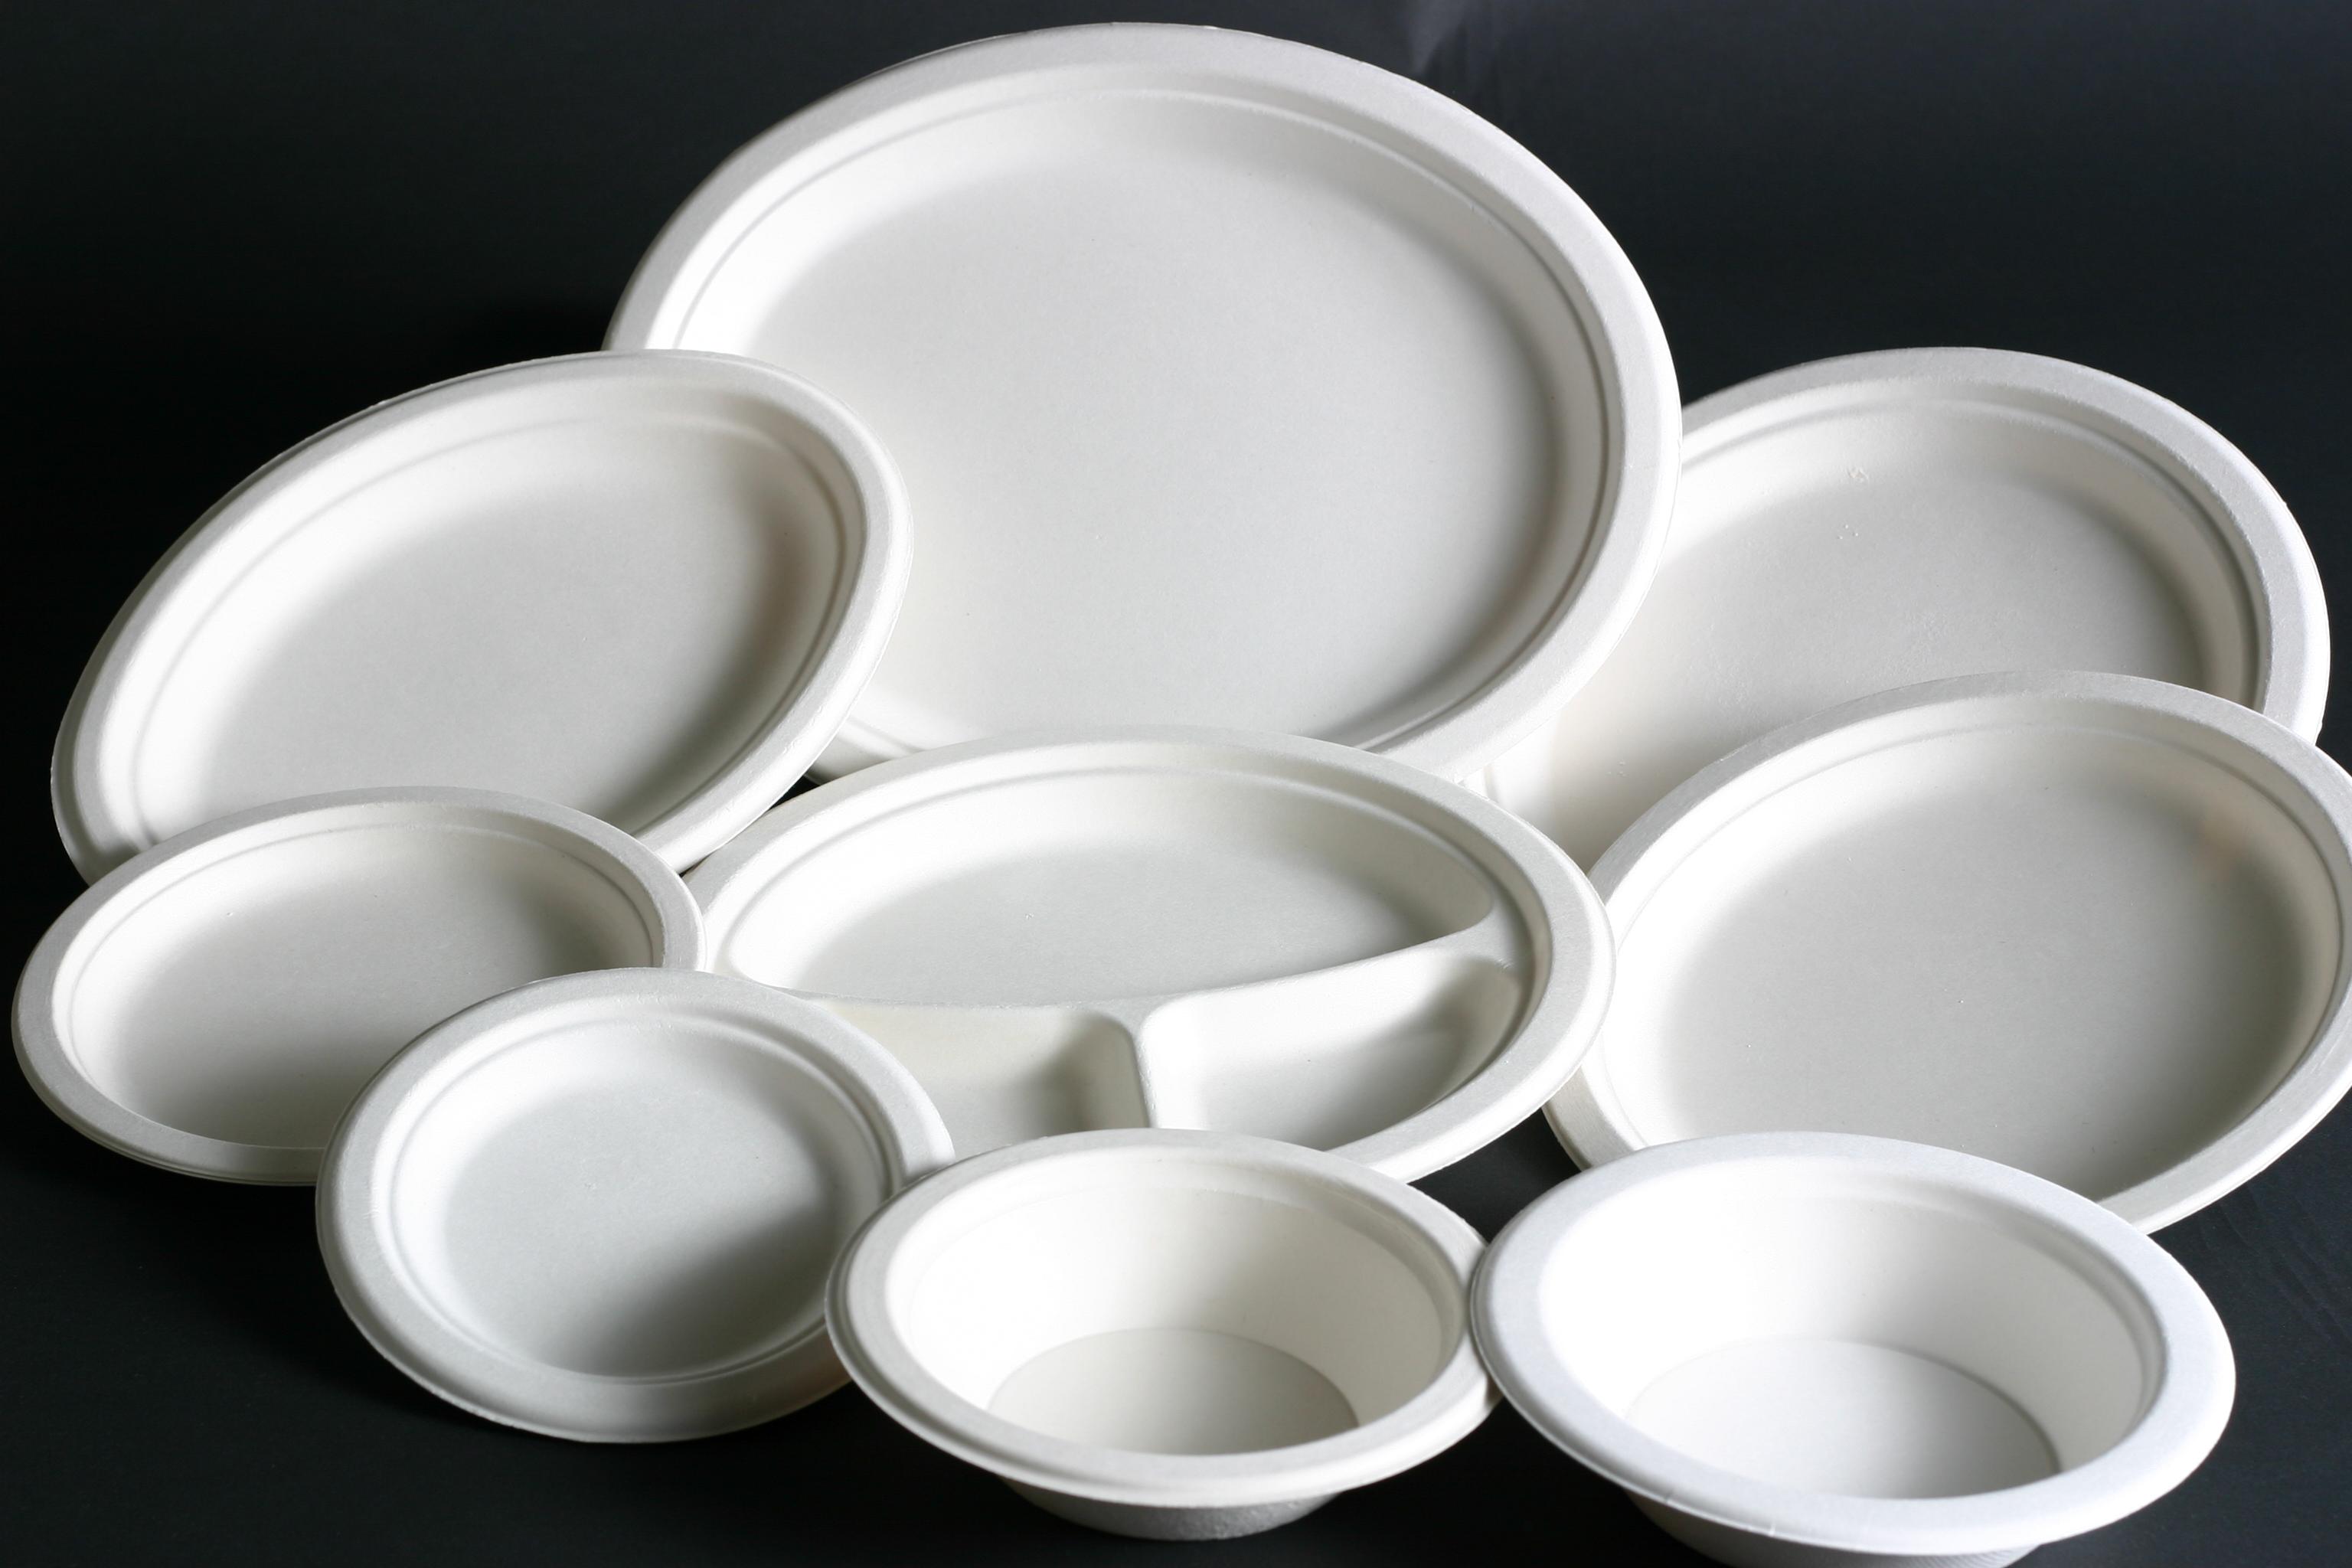 Plastični tanjiri, čaše i escajg mogu biti štetni po zdravlje